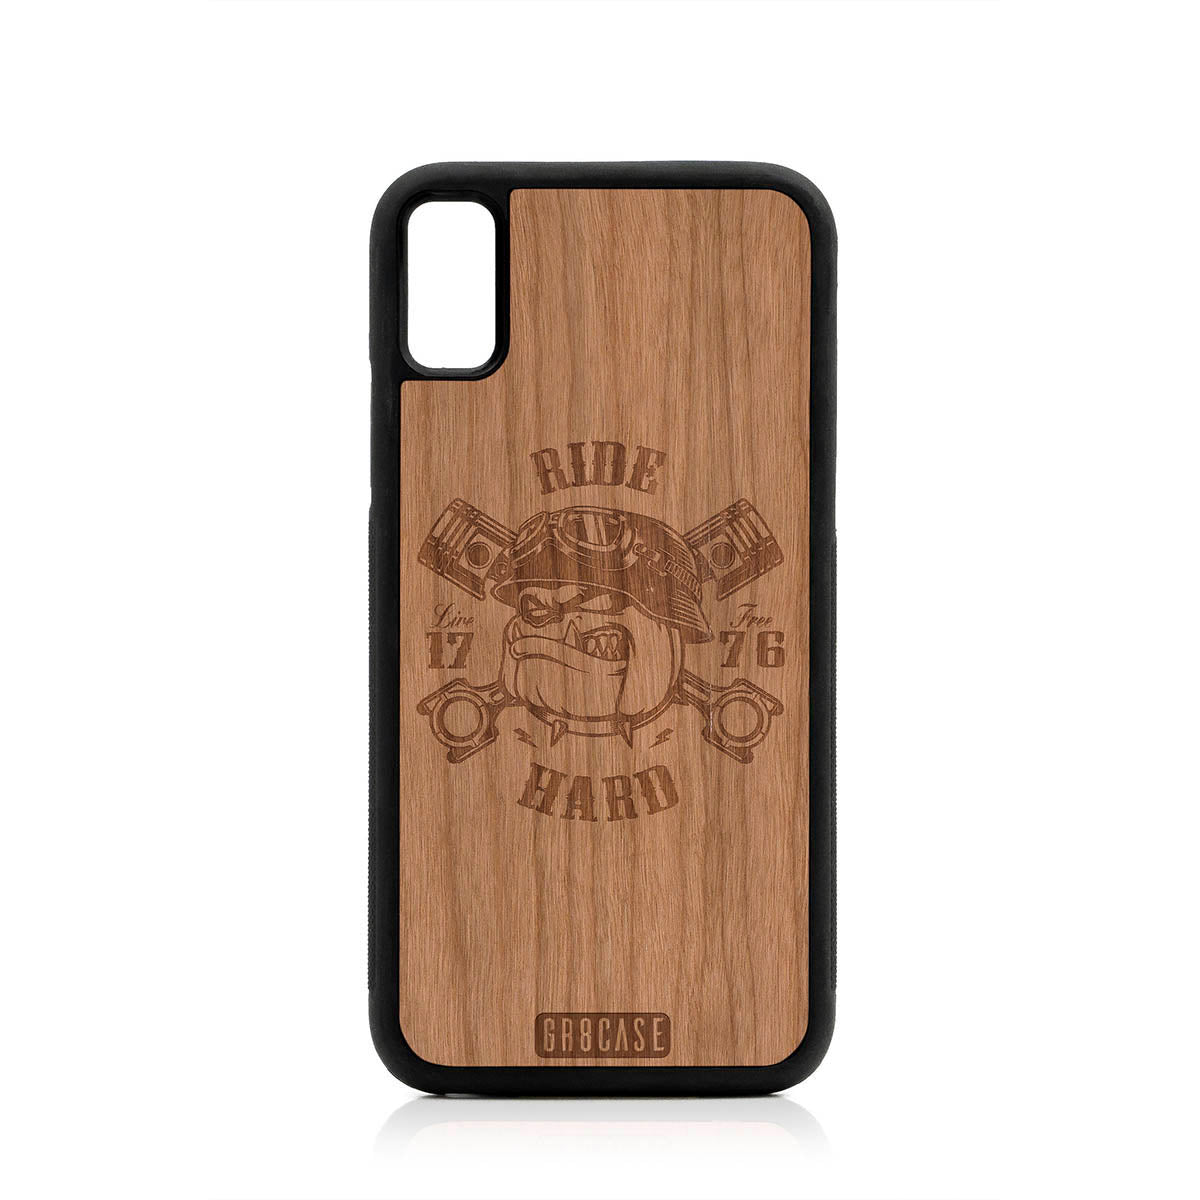 Ride Hard Live Free (Biker Dog) Design Wood Case For iPhone XR by GR8CASE